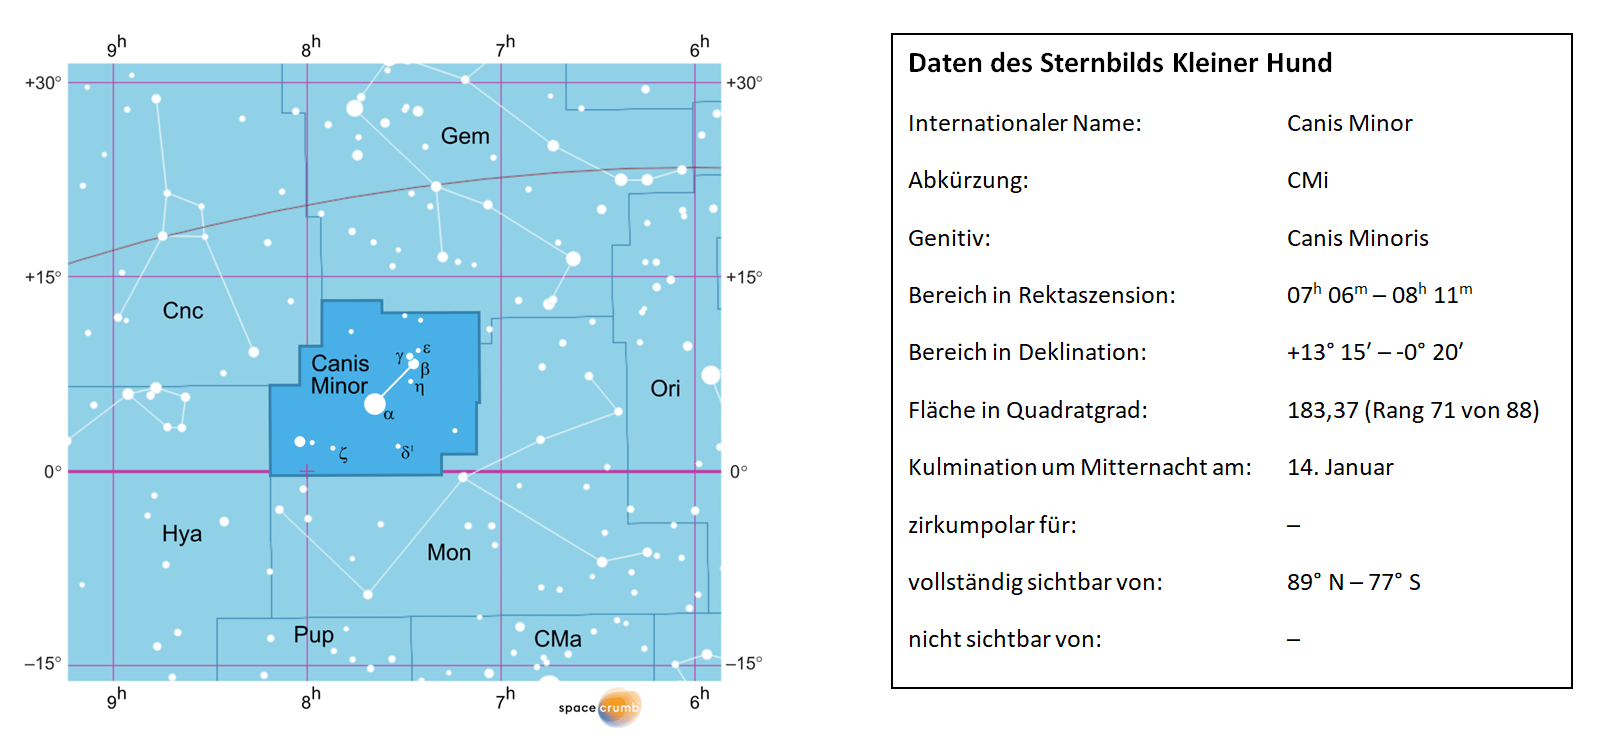 Links zeigt eine mit Koordinaten versehene  Karte eines Himmelsausschnitts weiße Sterne auf hellblauem Hintergrund. Die Fläche, die das Sternbild Kleiner Hund einnimmt, ist dunkelblau hervorgehoben. Eine Tabelle rechts gibt wichtige Daten des Sternbilds Kleiner Hund an.